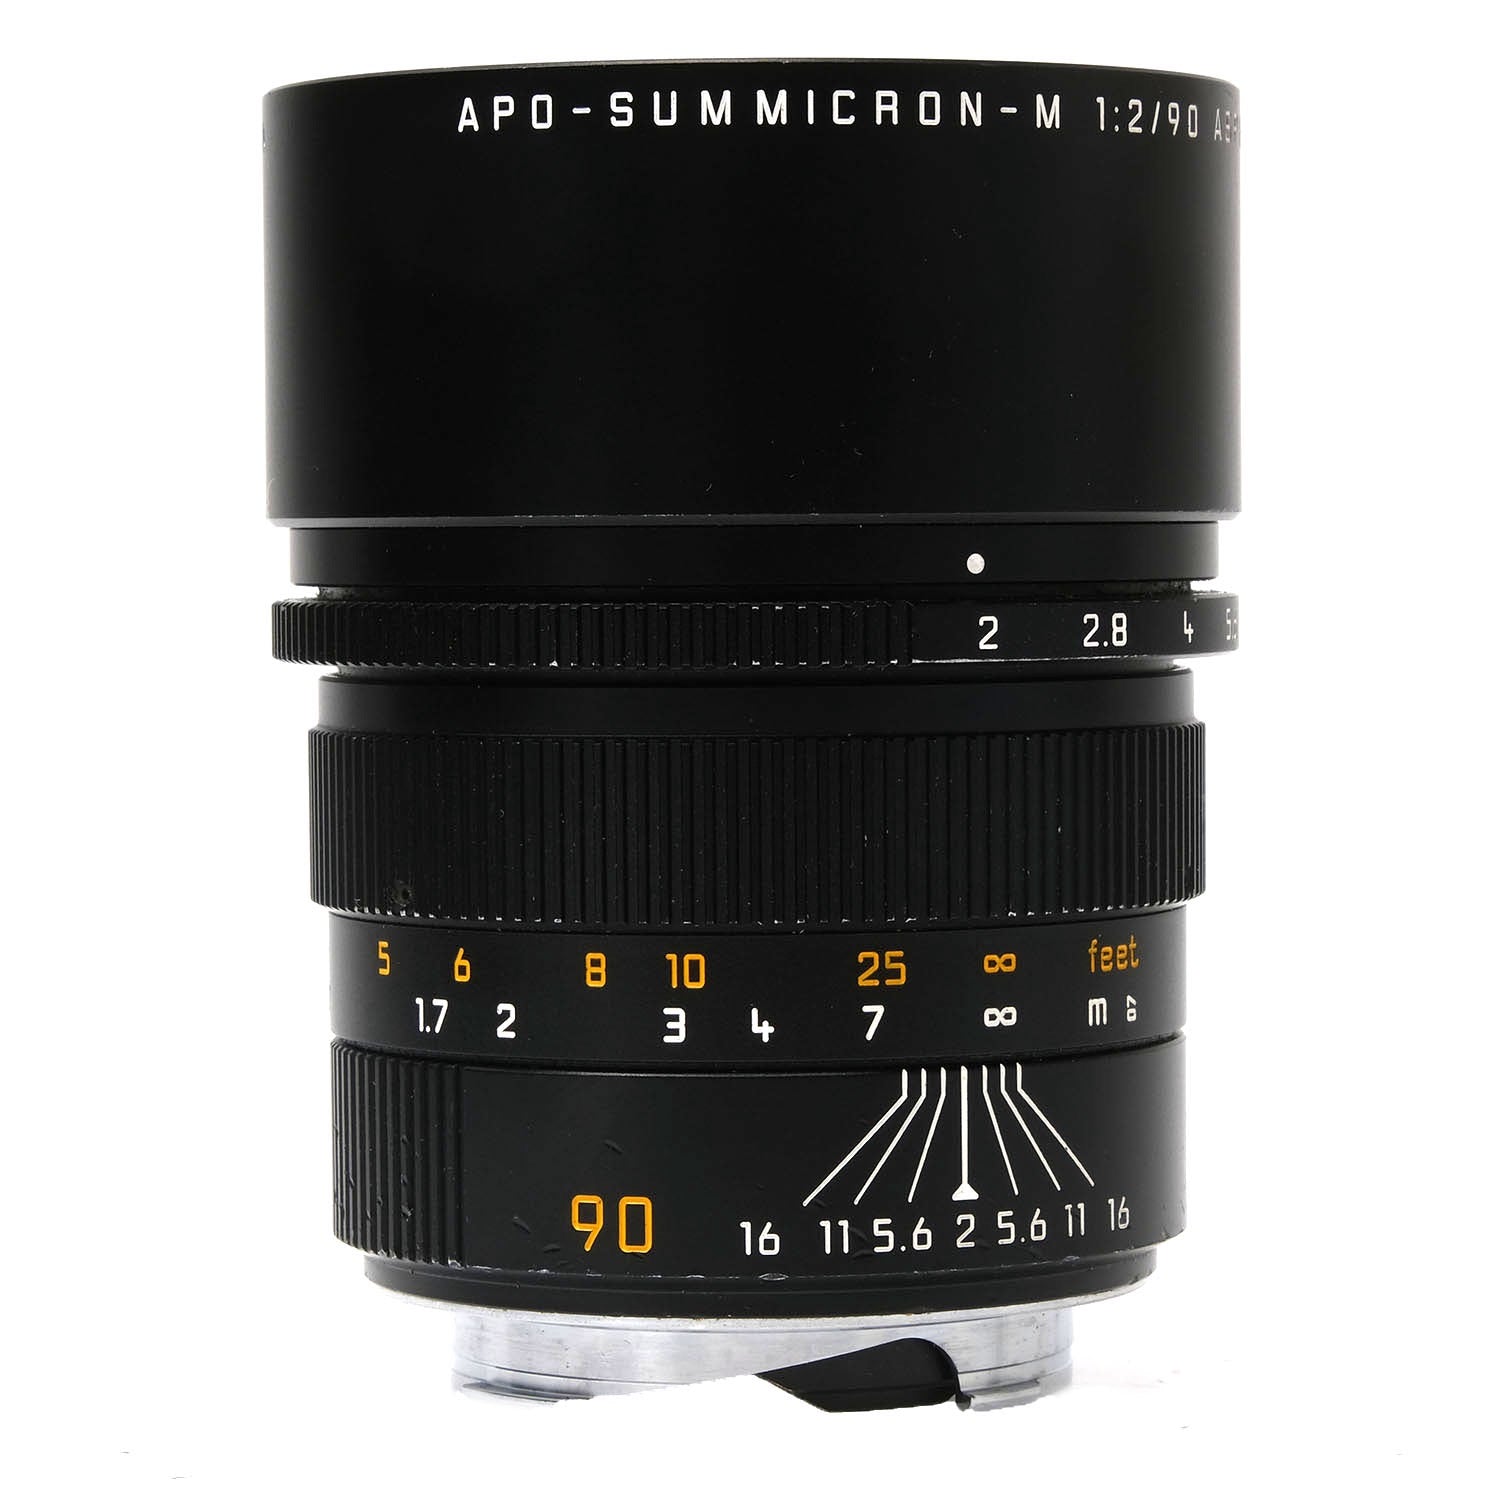 Leica 90mm f2 APO-Summicron-M Asph, Black 3918581